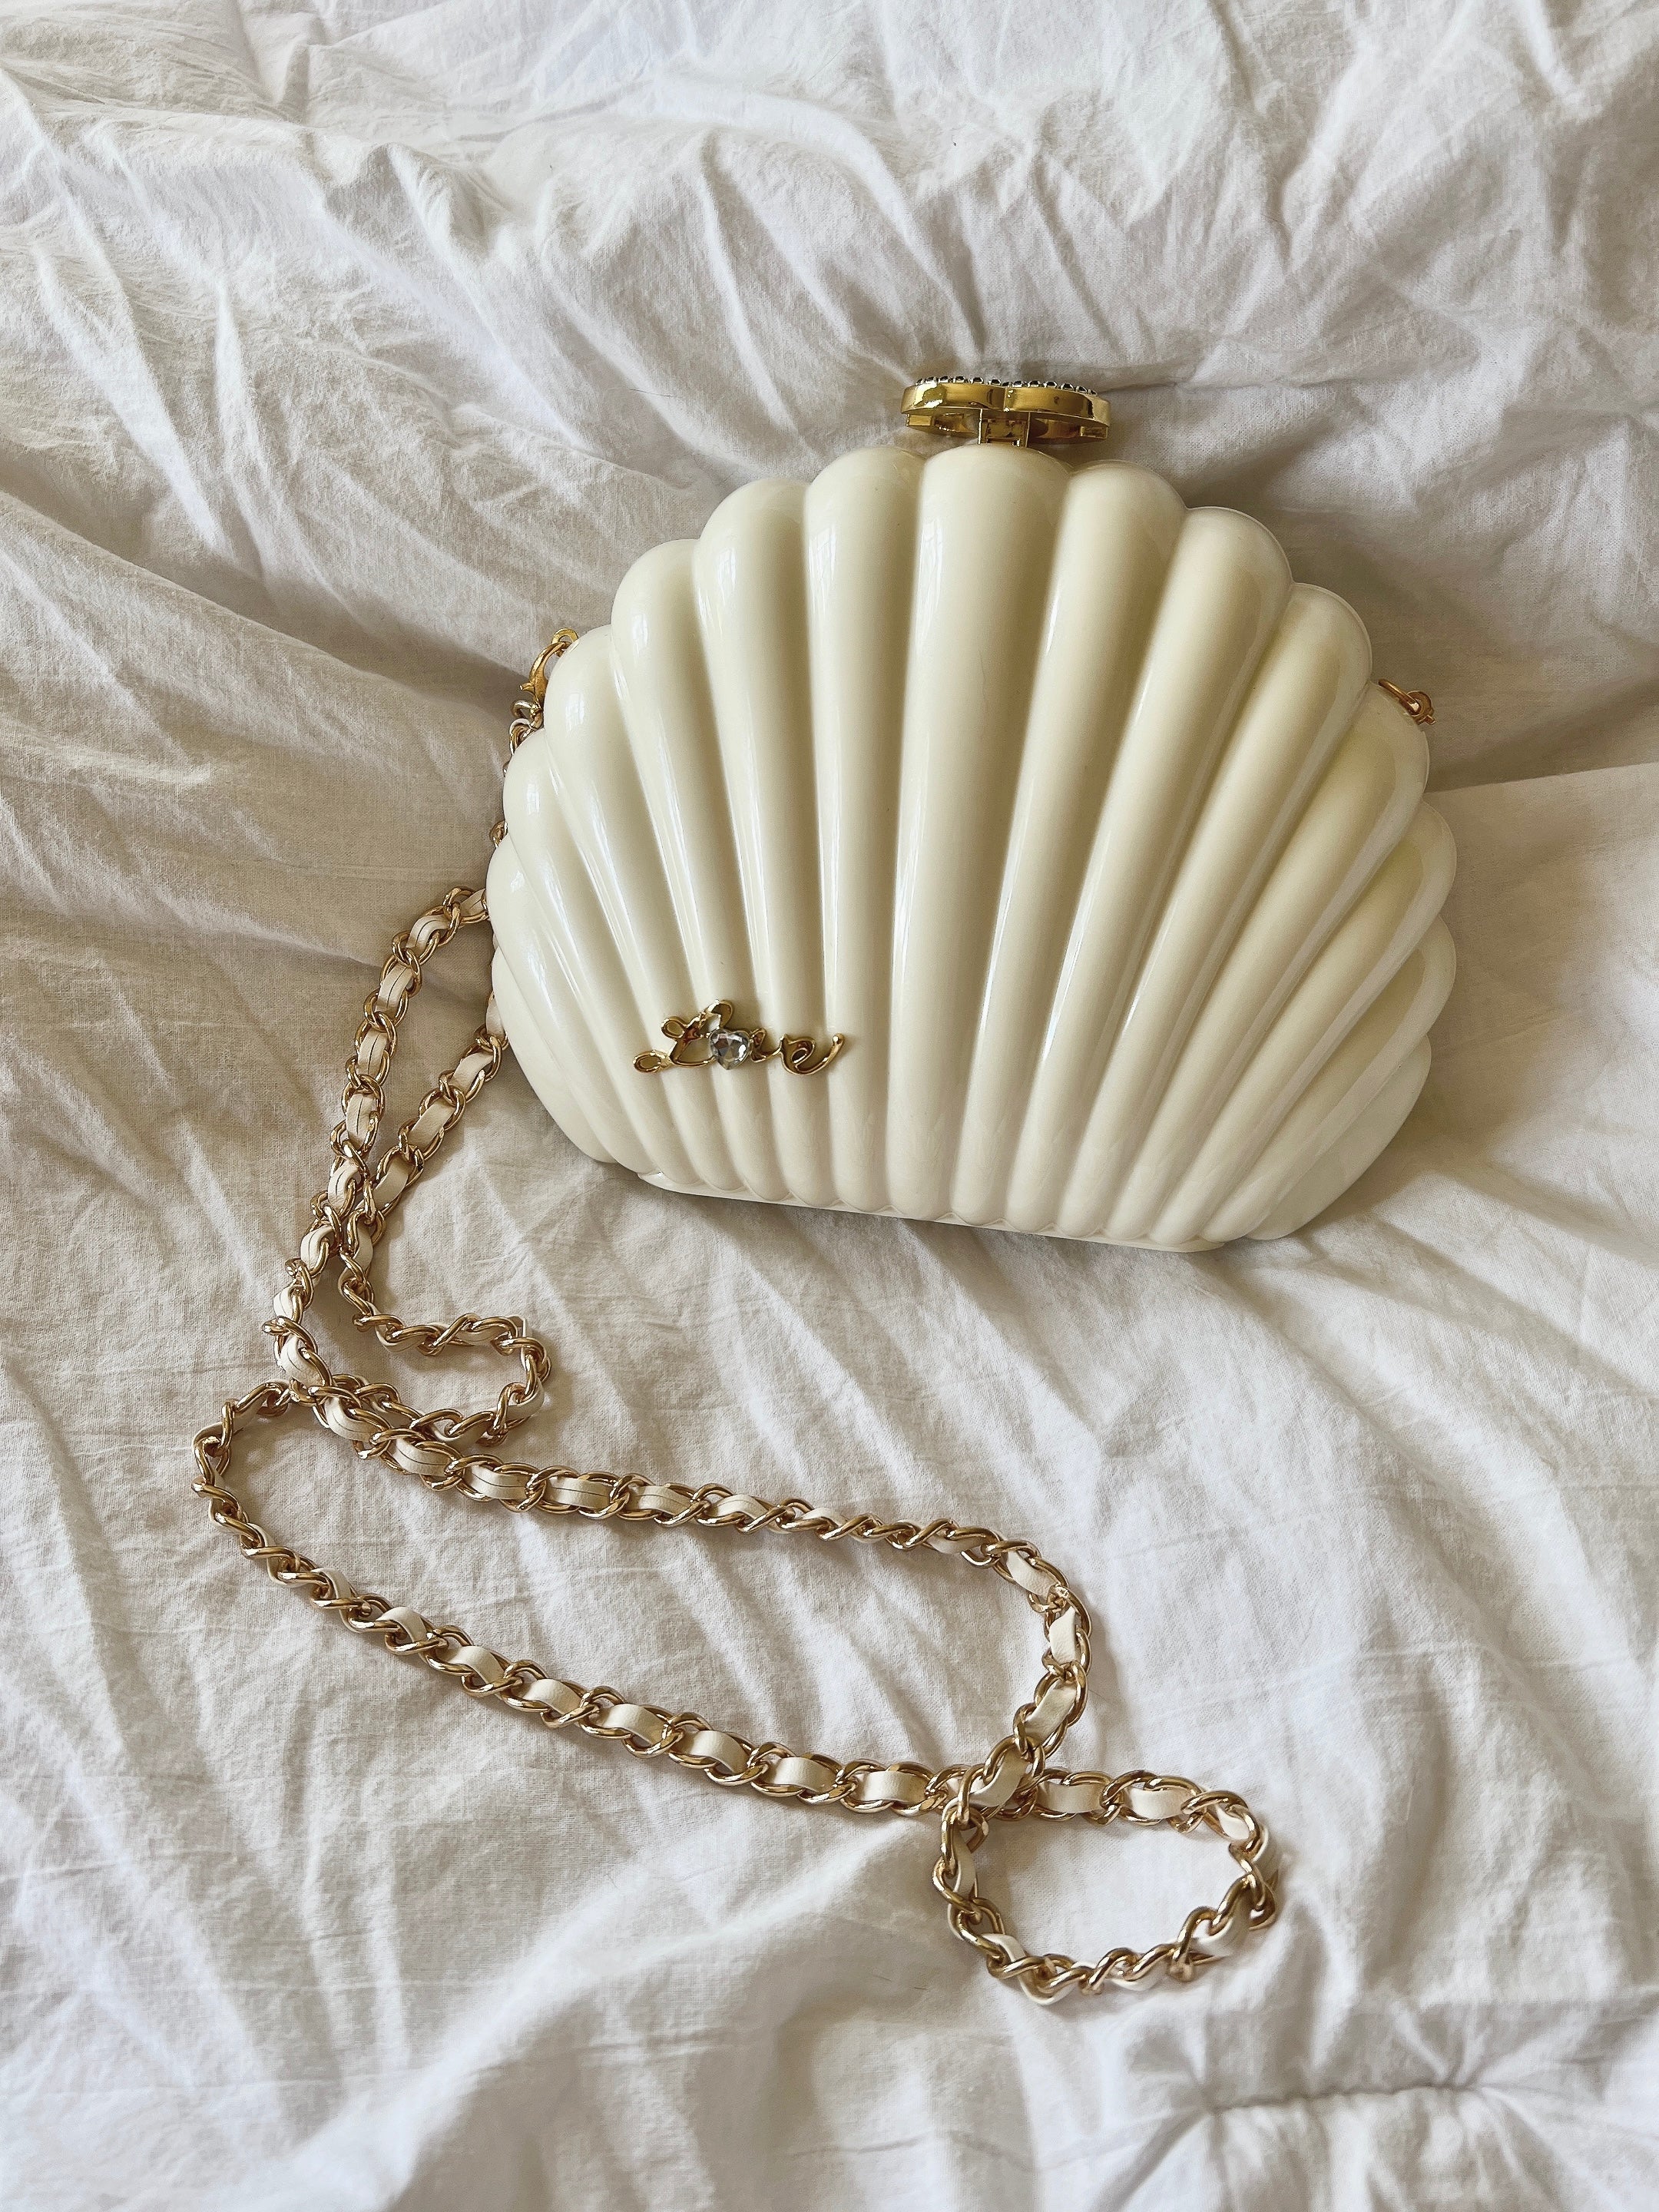 Limited Edition Chanel Gold Ball 2016 Dubai VIP Gift Bag